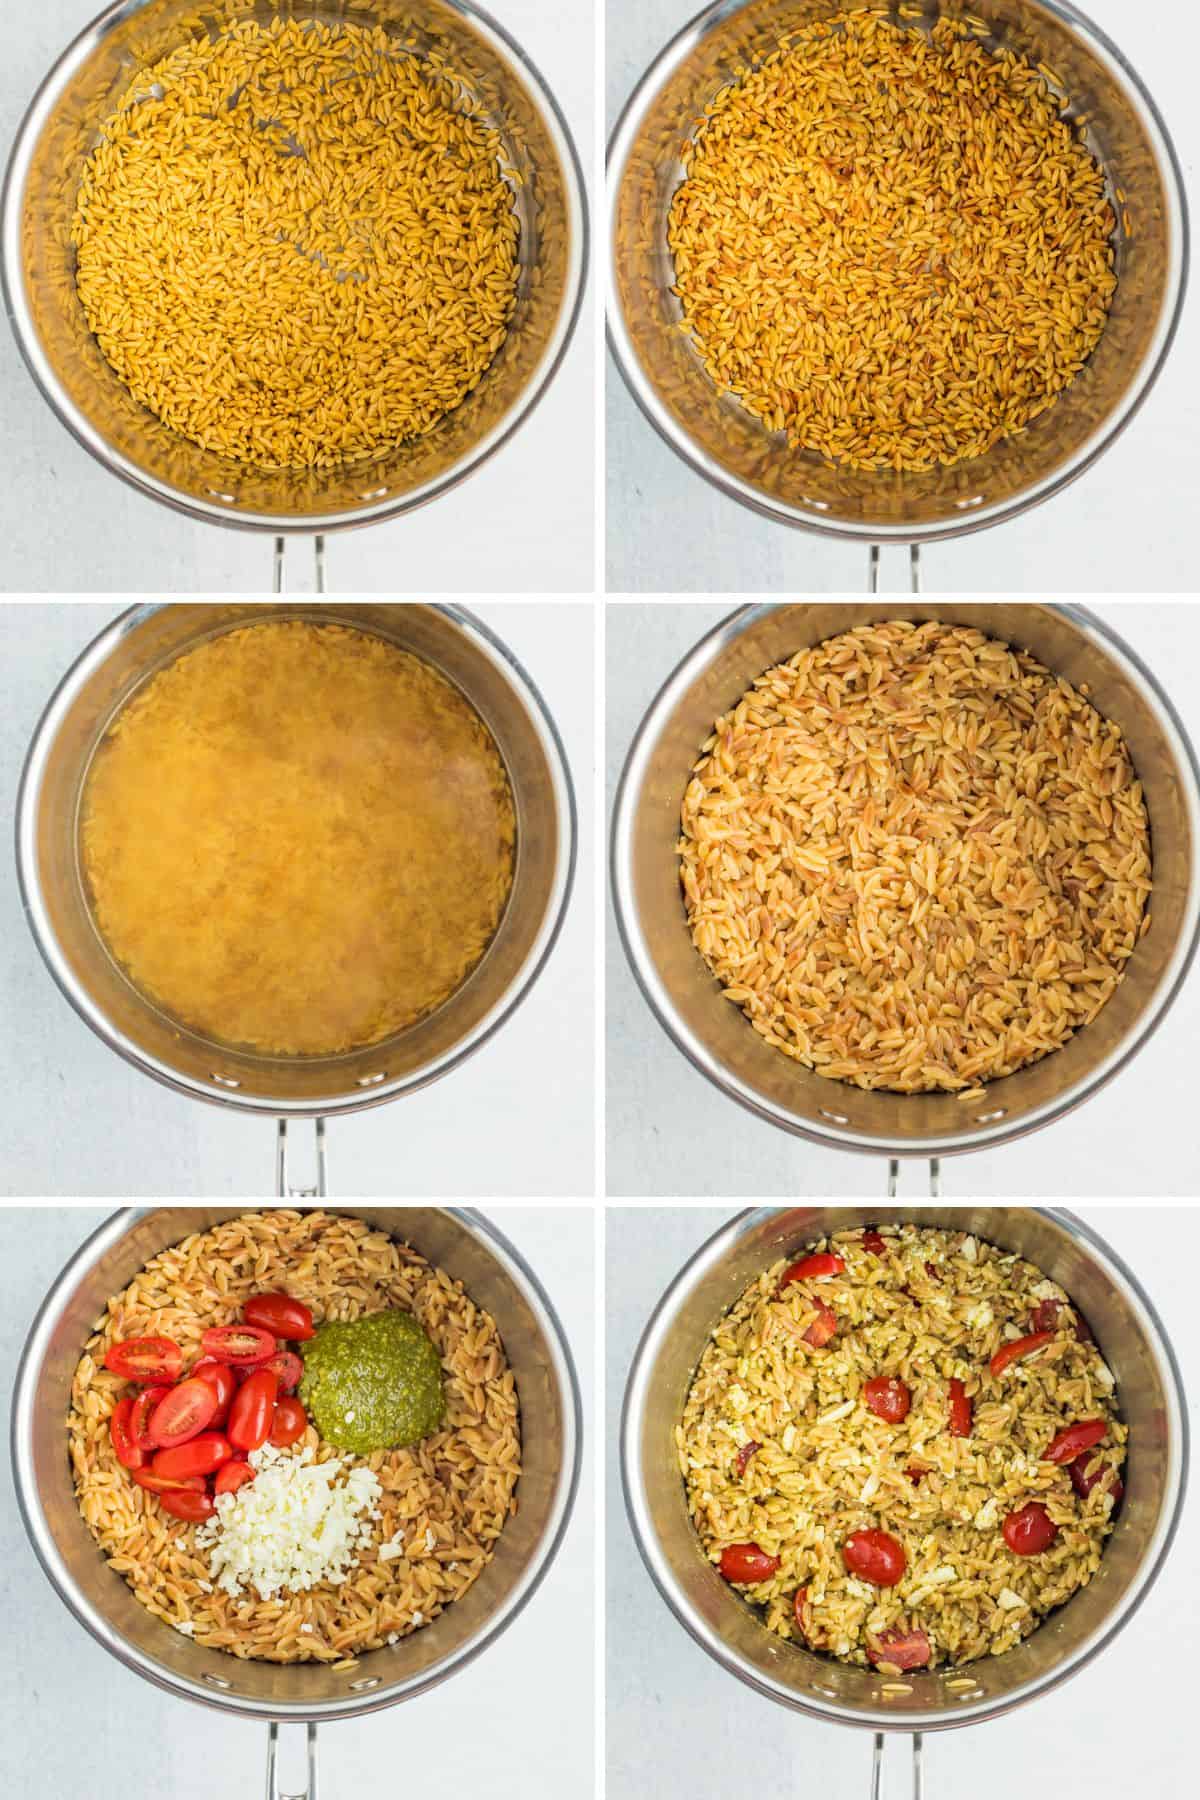 6 Fotos, die den Prozess des Toastens und der Zubereitung eines Orzo-Salats zeigen.